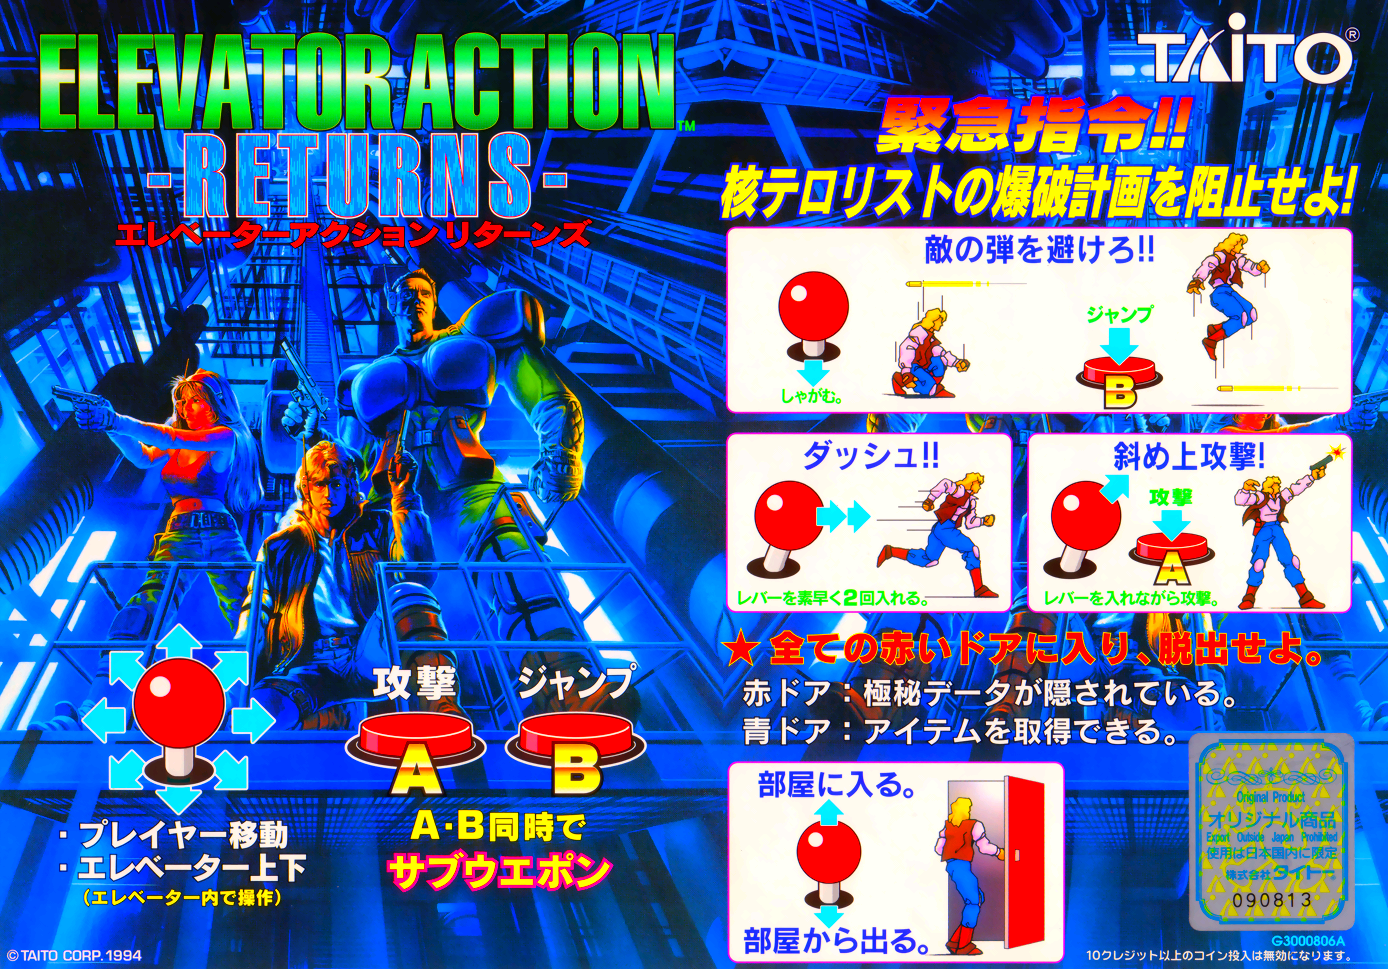 Elevator Action Returns (Ver 2.2J 1995/02/20) flyer